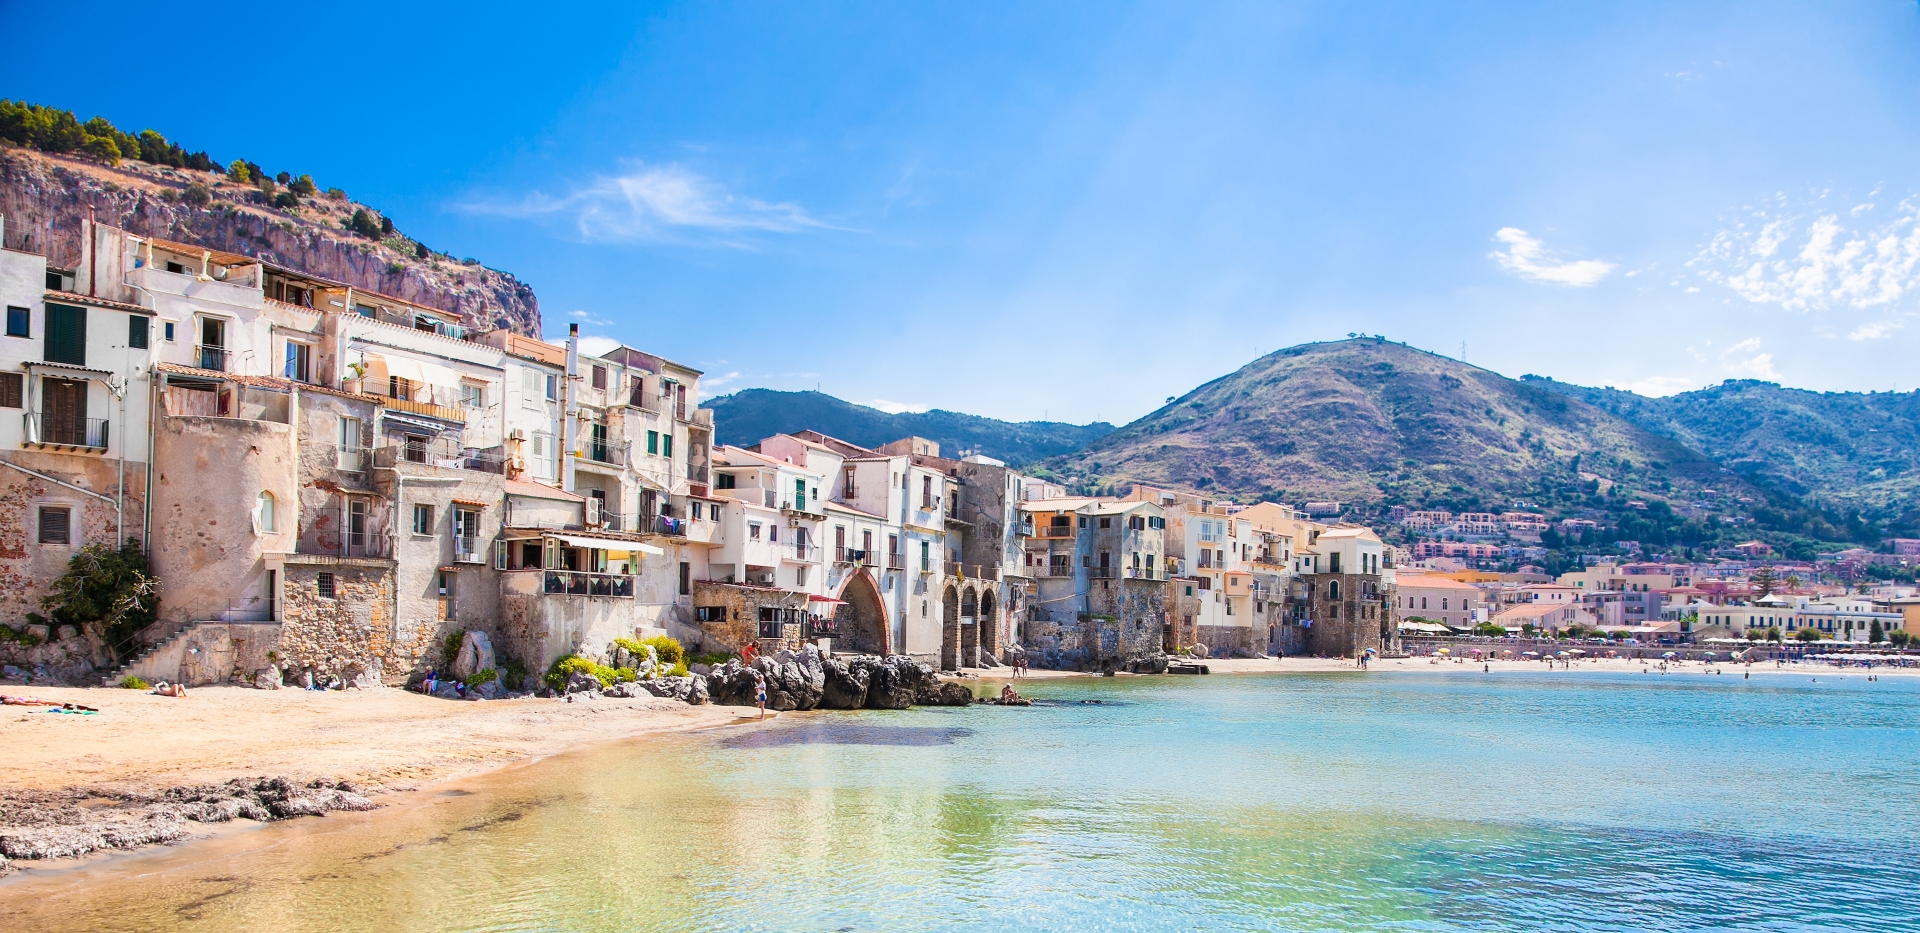 Sicilian village - Romance and adventure in Sicily